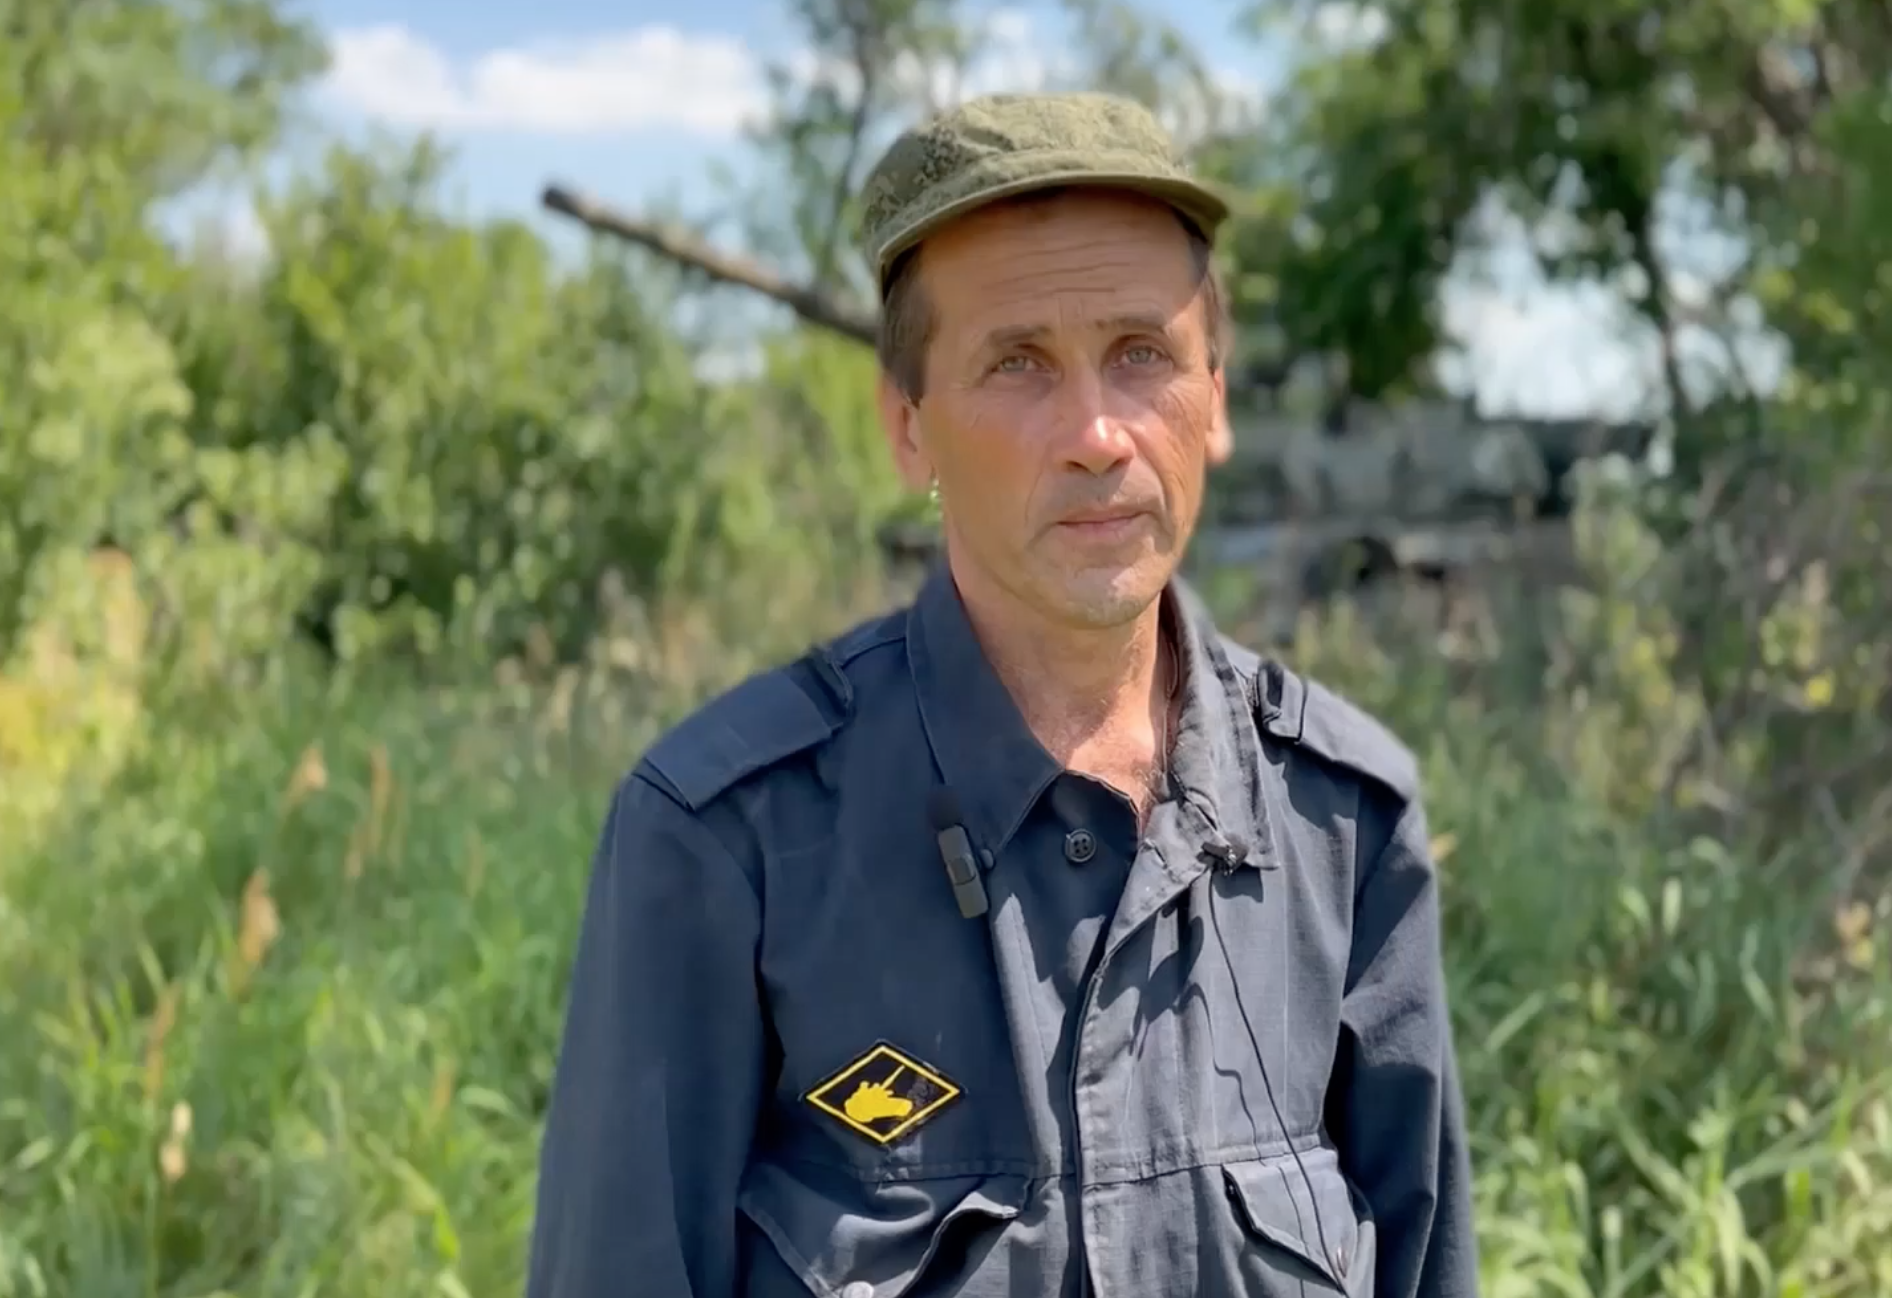 "Победа - когда мы будем вместе": танкист из Ижевска об общении с местными в зоне СВО